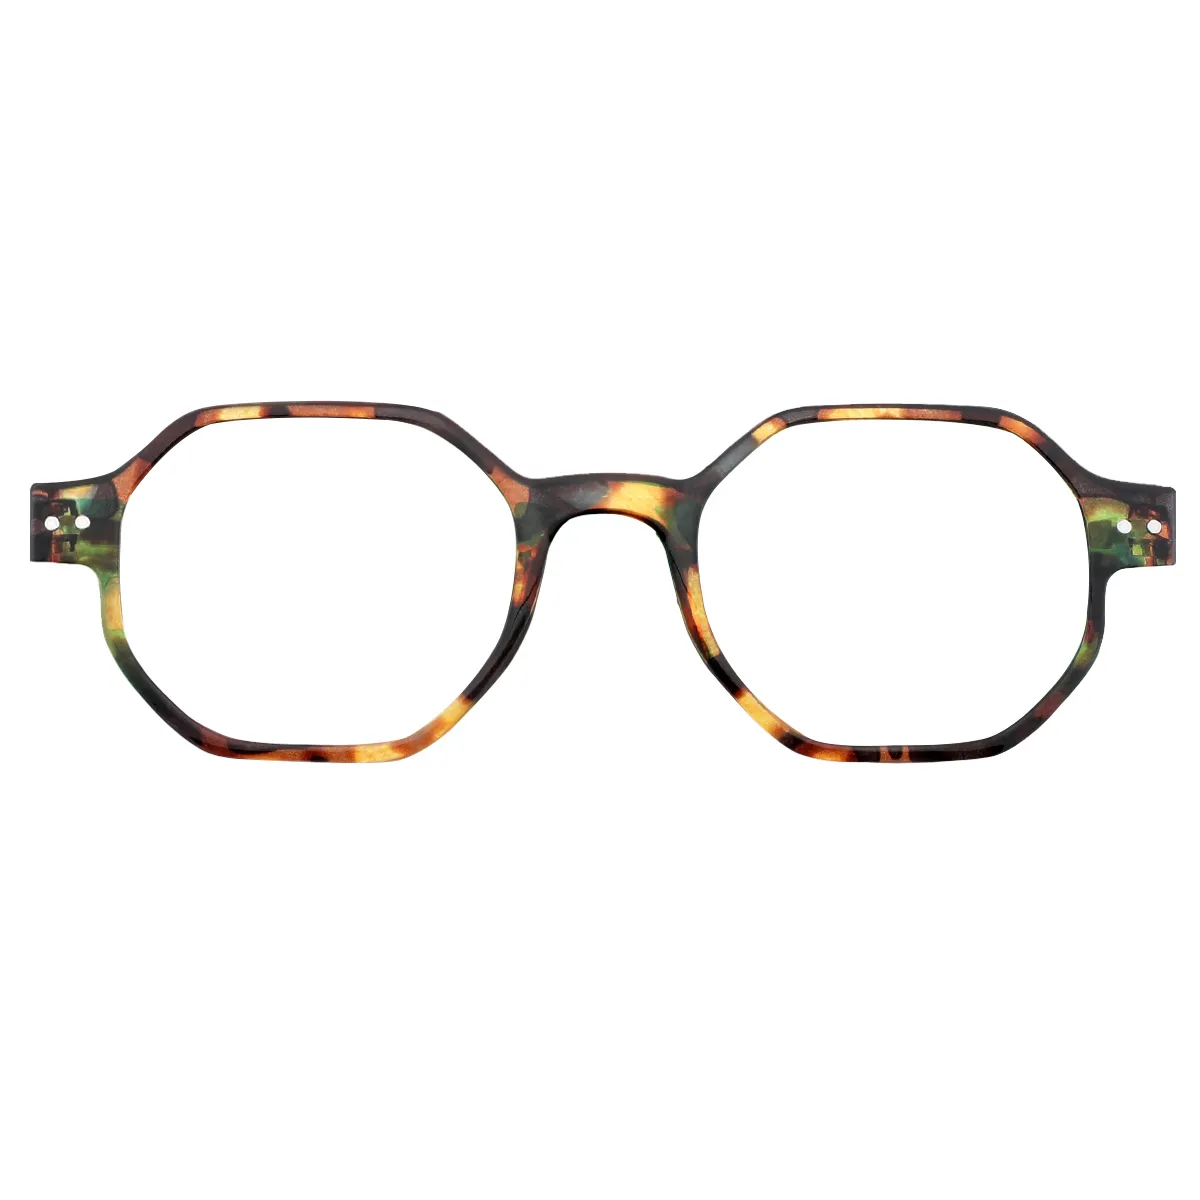 Deva - Geometric Demi-Green Reading glasses for Women